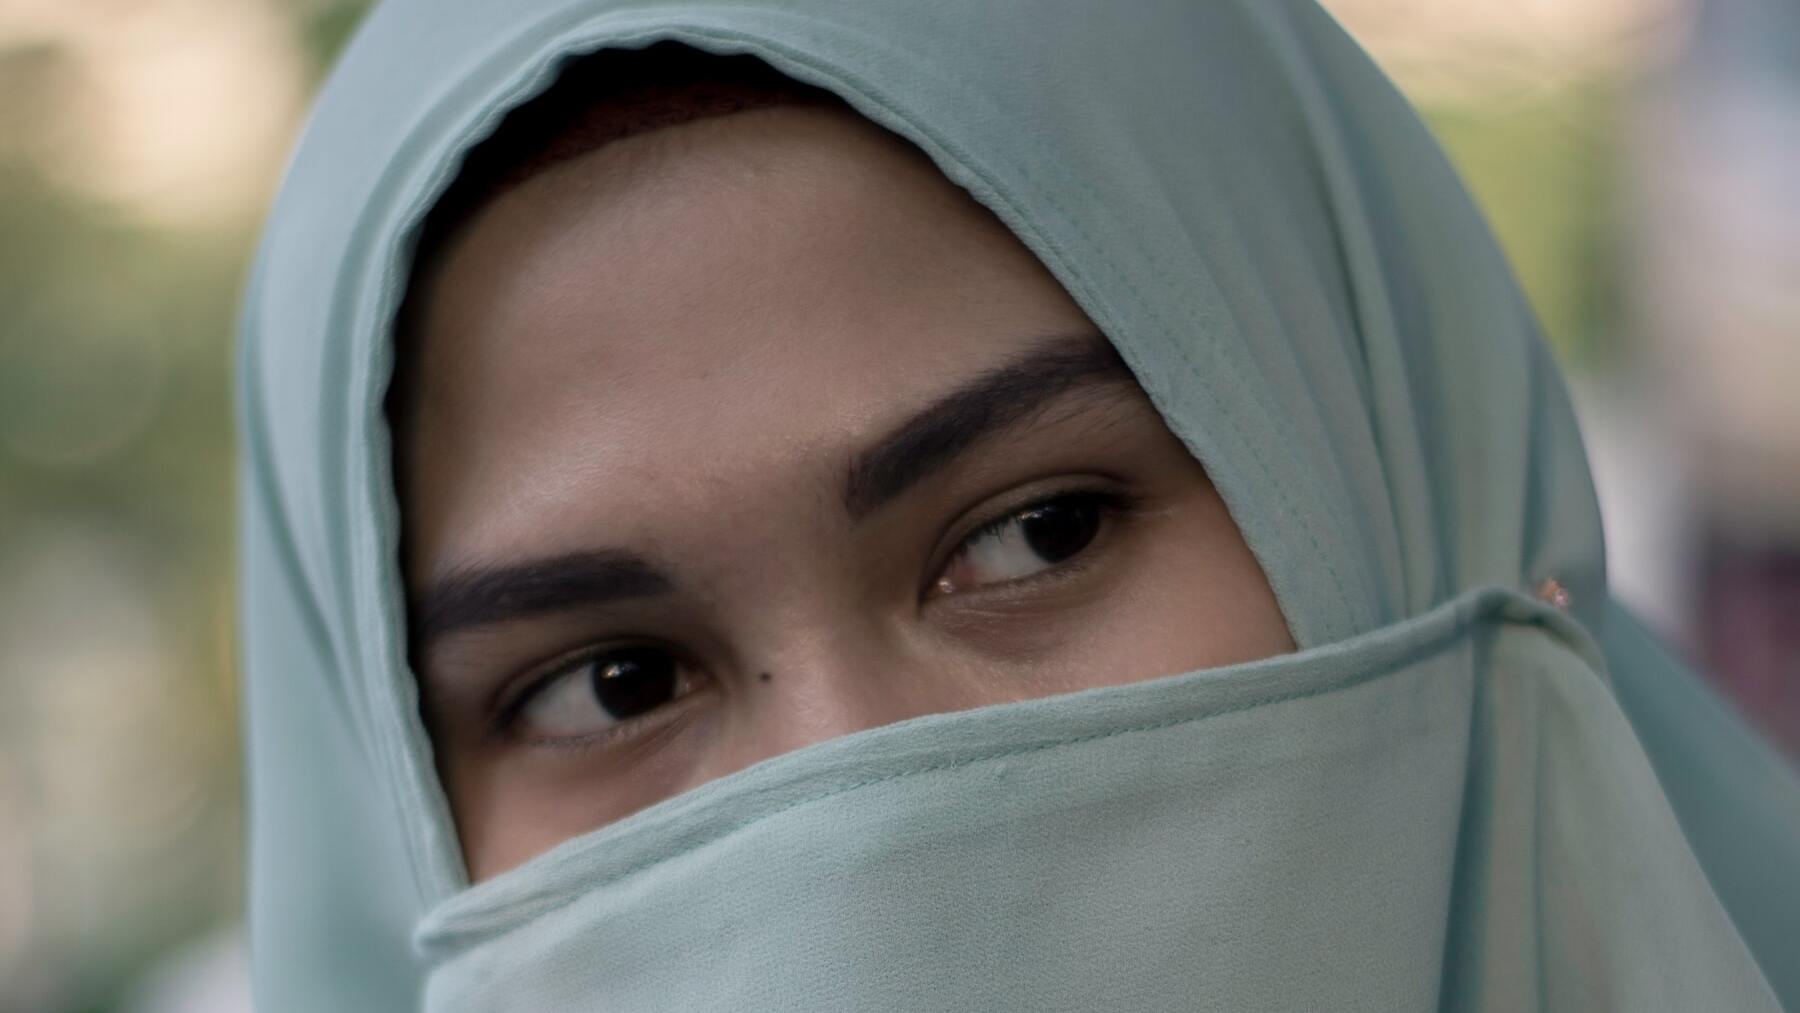 Los 6 tipos de velos islámicos que existen: burka, niqab…